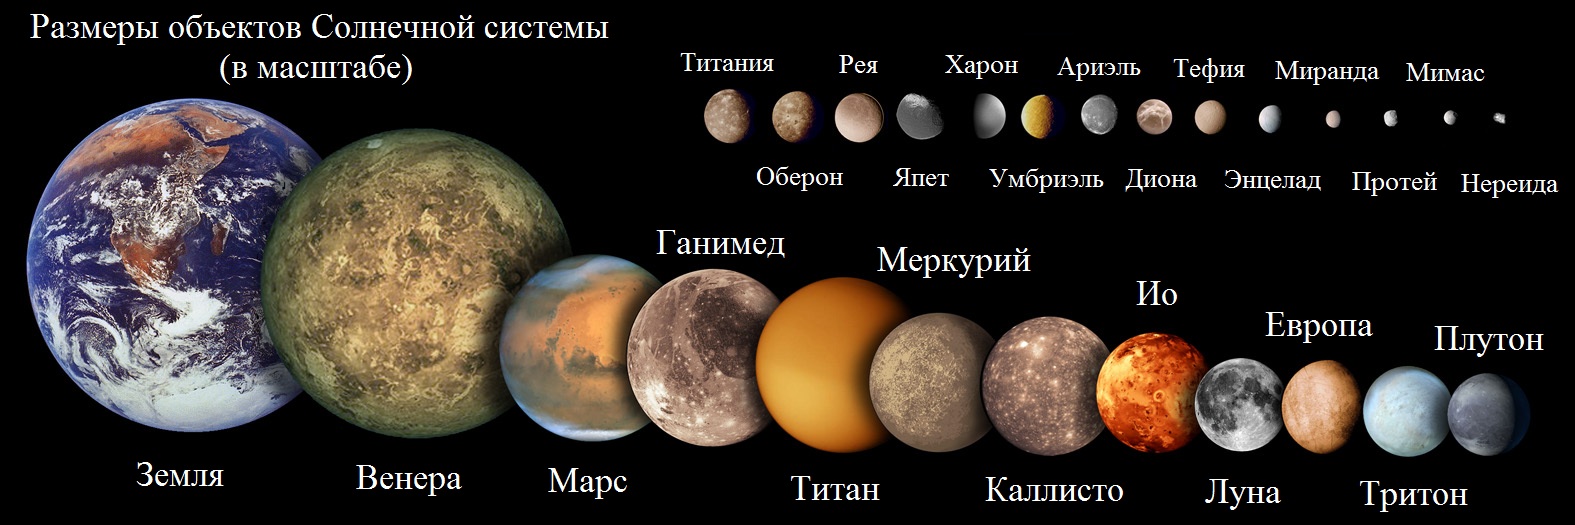 Поиск жизни в Солнечной системе - 1